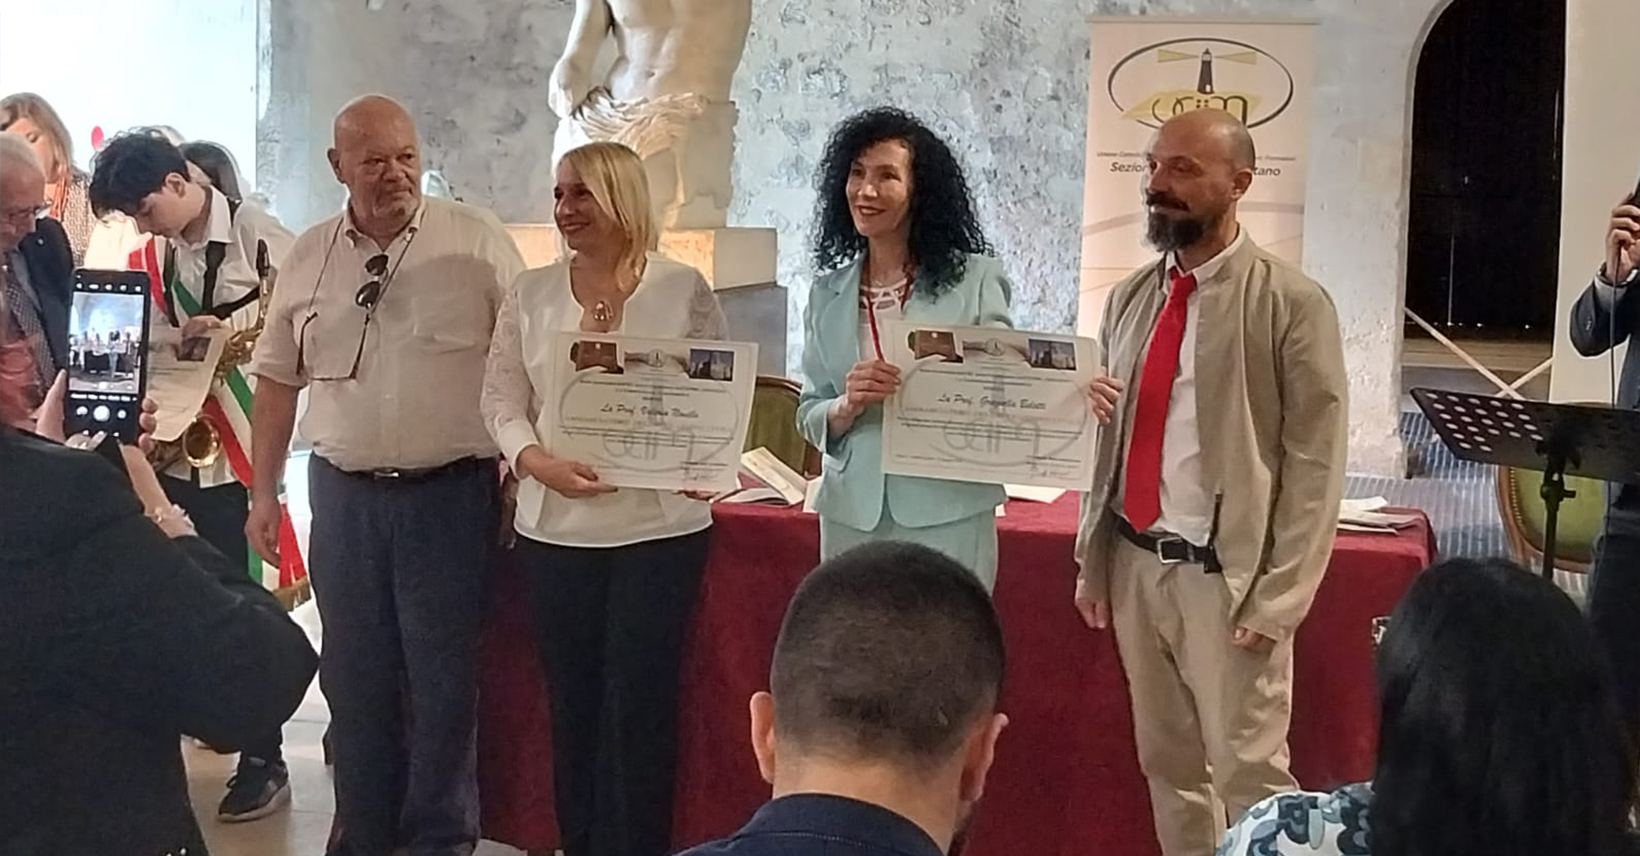 Cerimonia Ambasciatore ed. Civica, premiate due docenti dell’Istituto R.L. Montalcini di Iseo